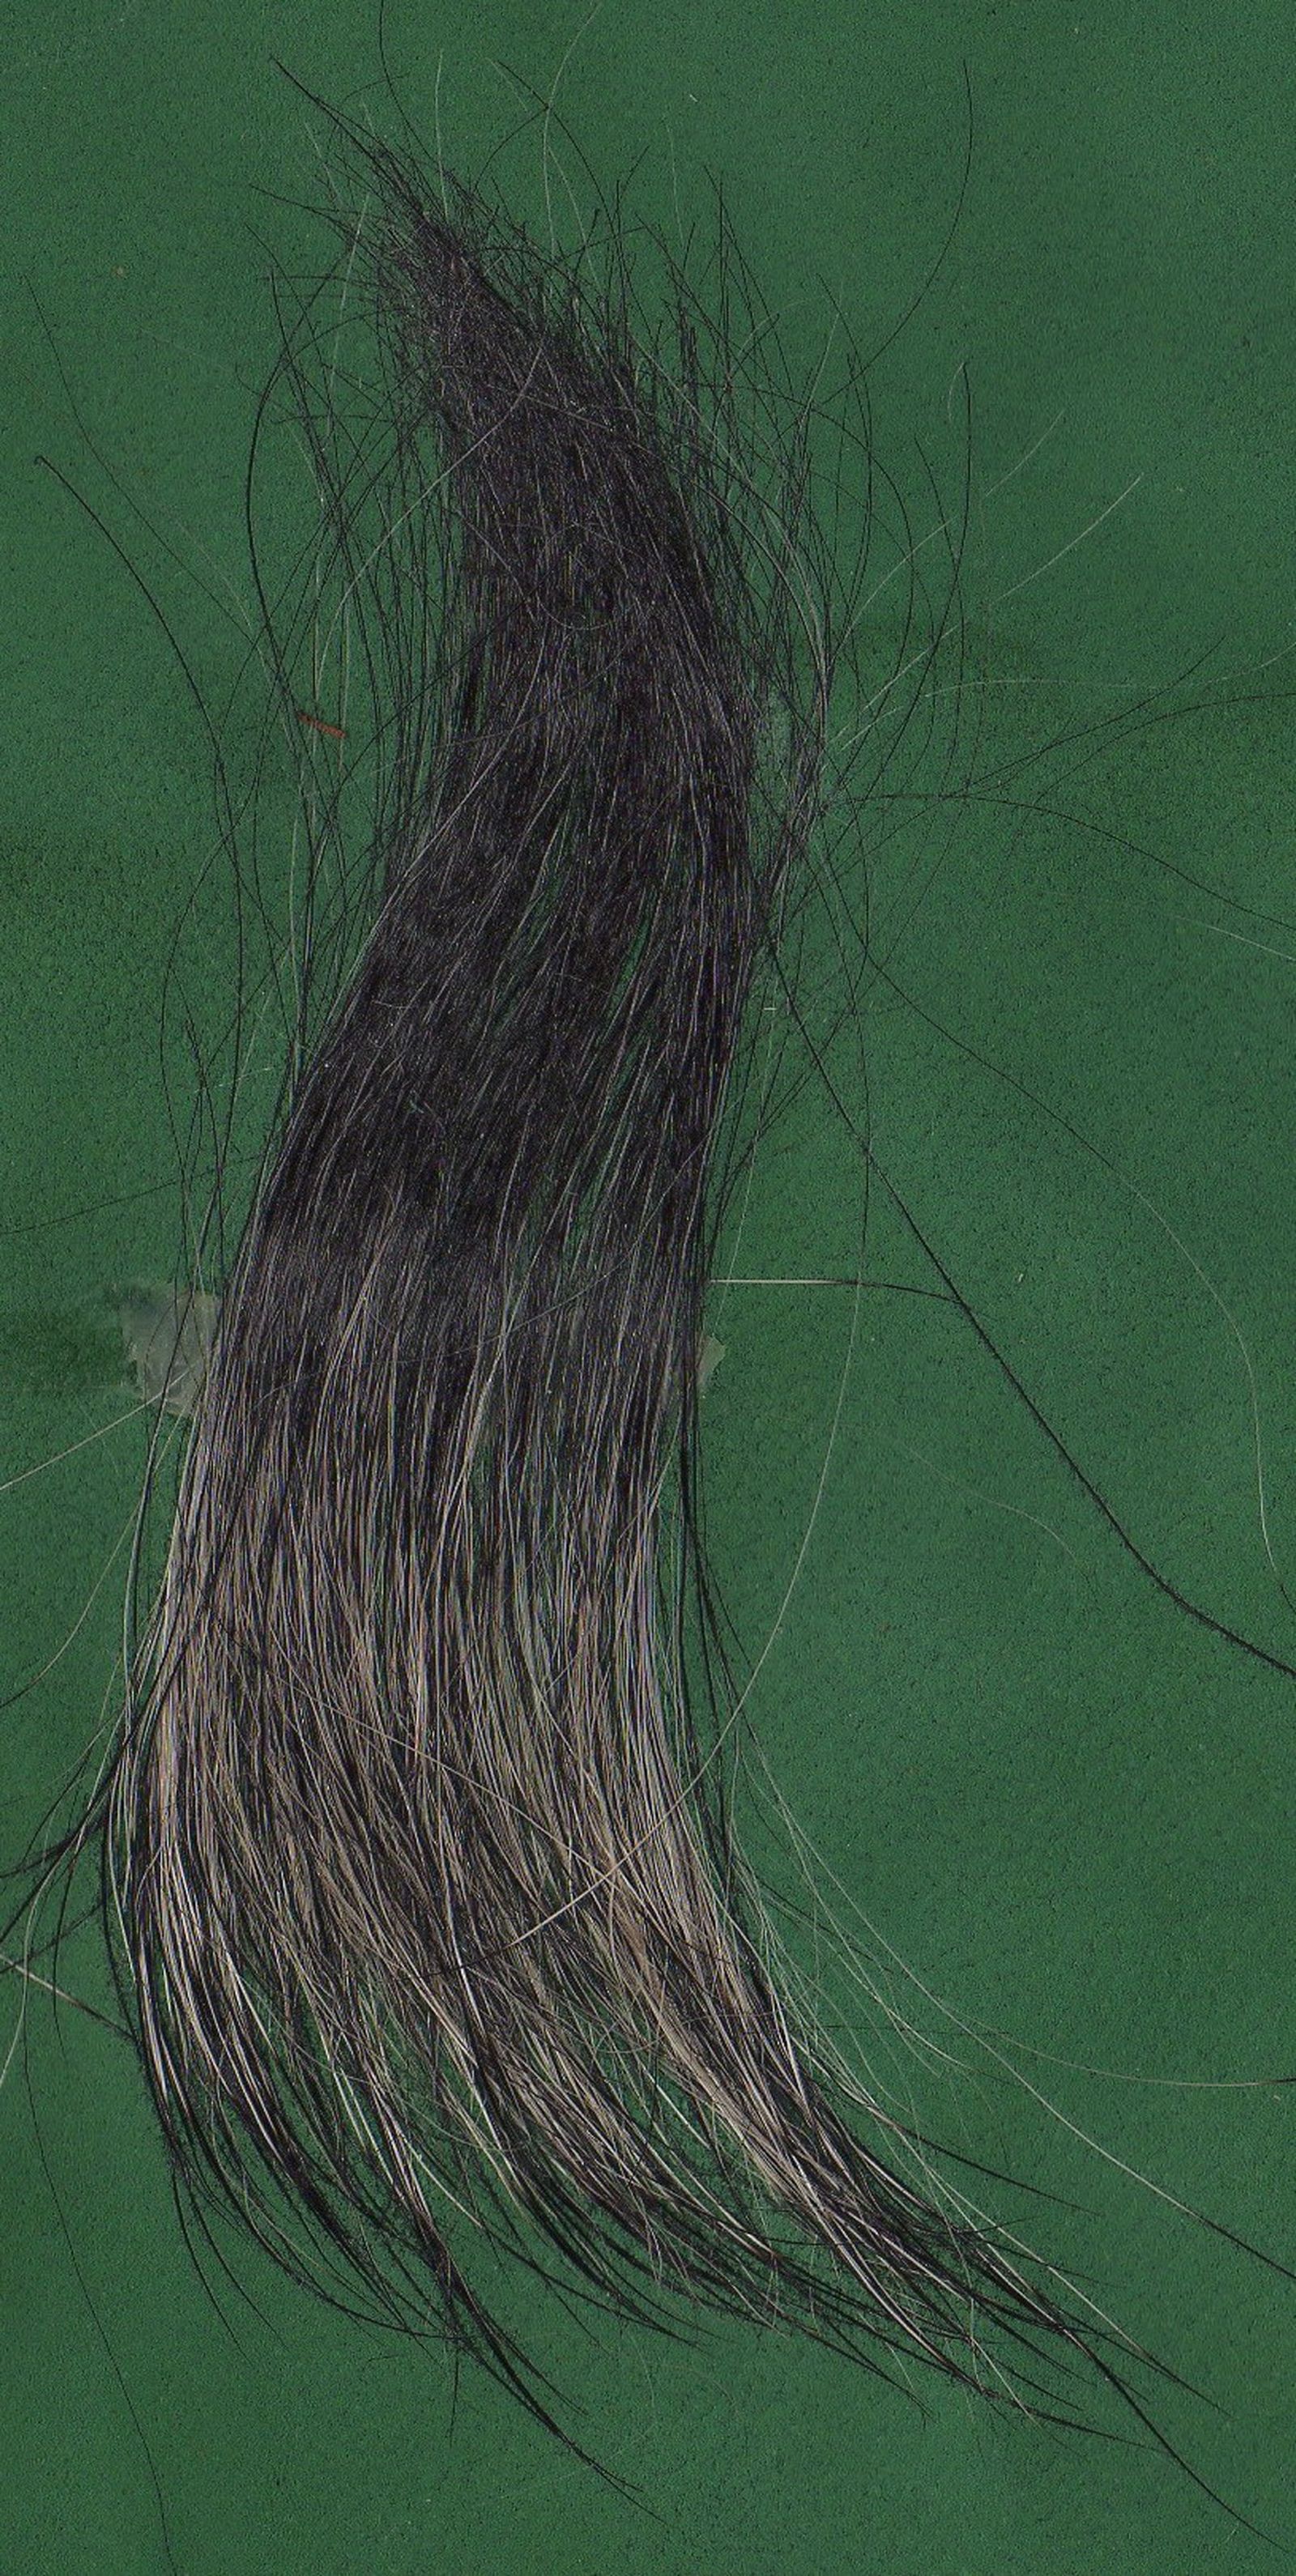 Längeres und weiches Haar vom Schnauzer in der Farbe pfeffersalz auf grünem Untergrund in Großformat